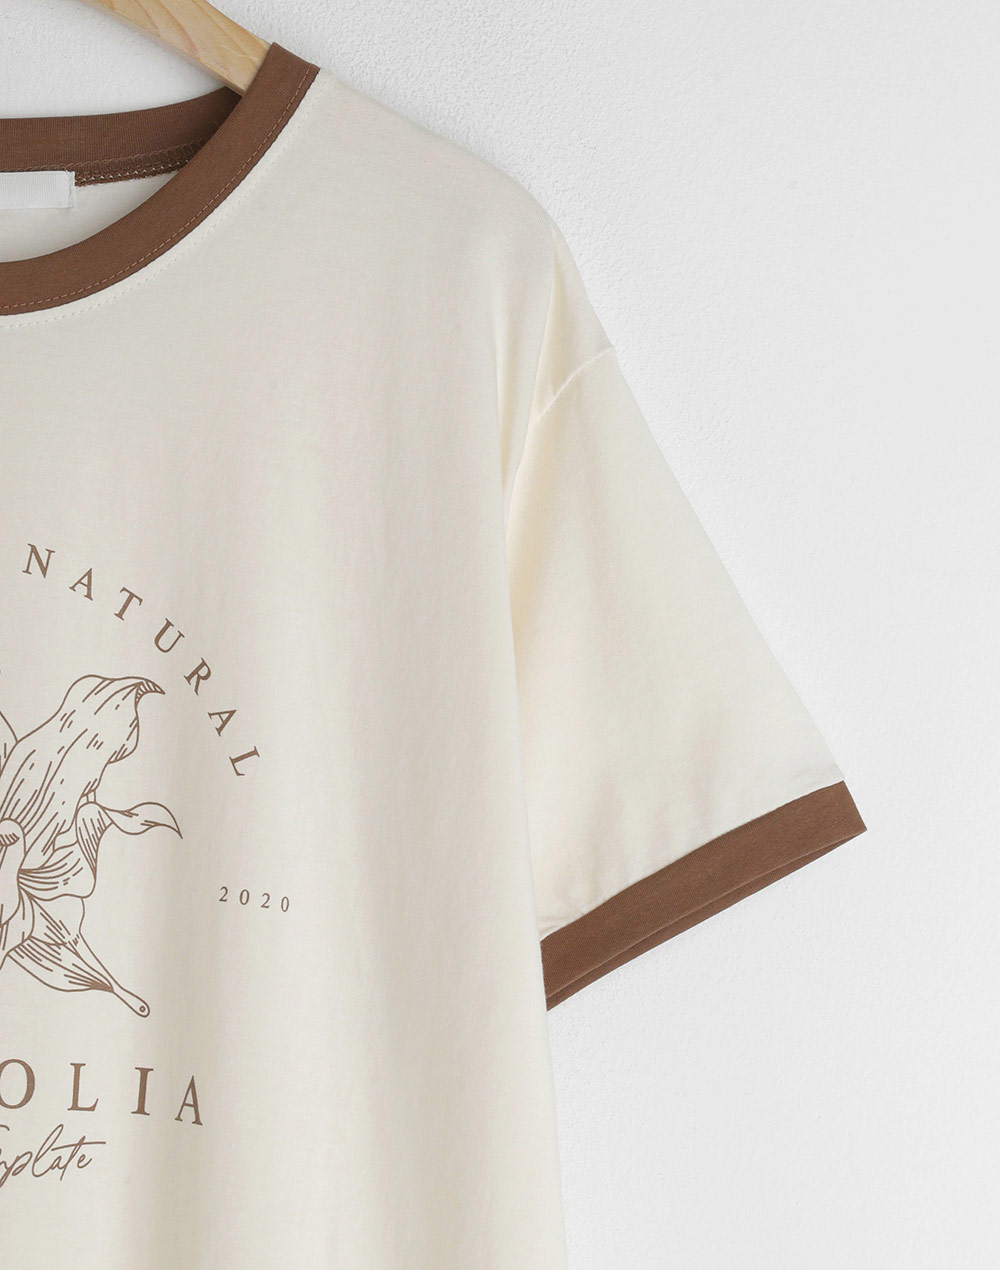 MAGNOLIA Tシャツ・b281523（トップス/Tシャツ）| walk_marin | 東京ガールズマーケット